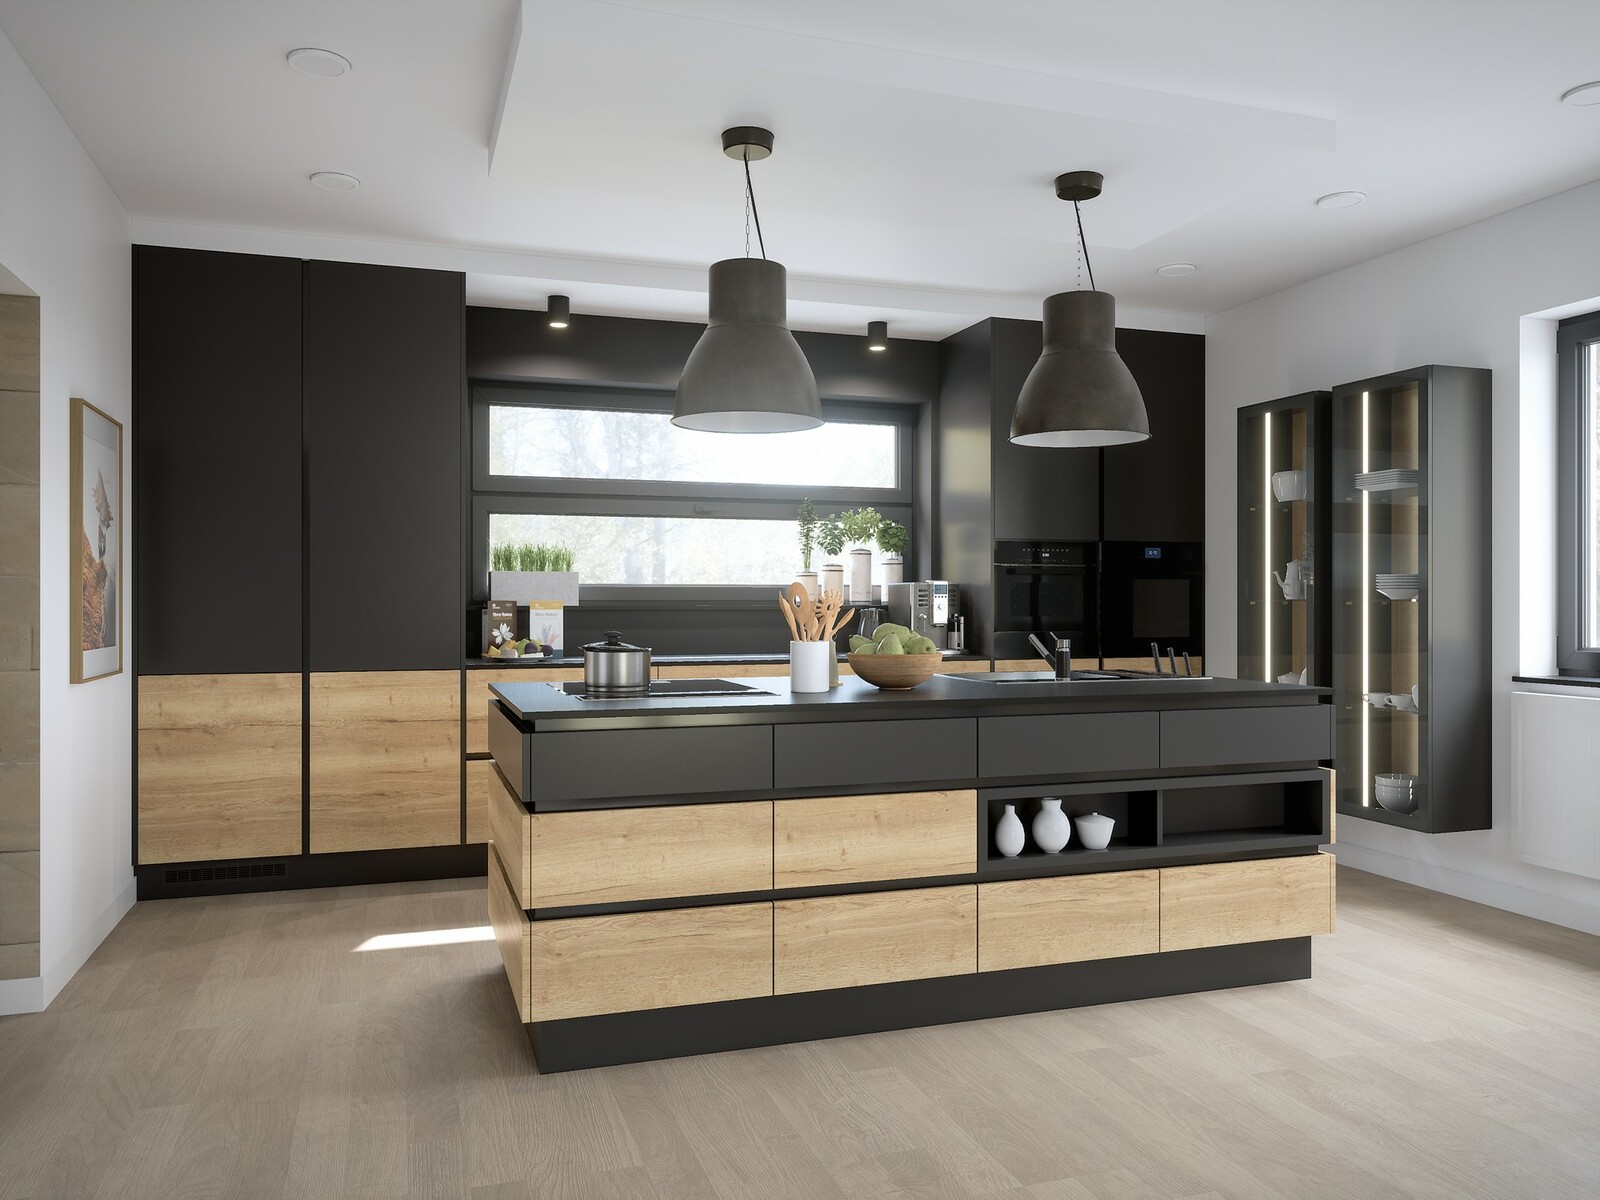 Kitchen Interior Archviz - Unreal Engine / UE4 + RTX